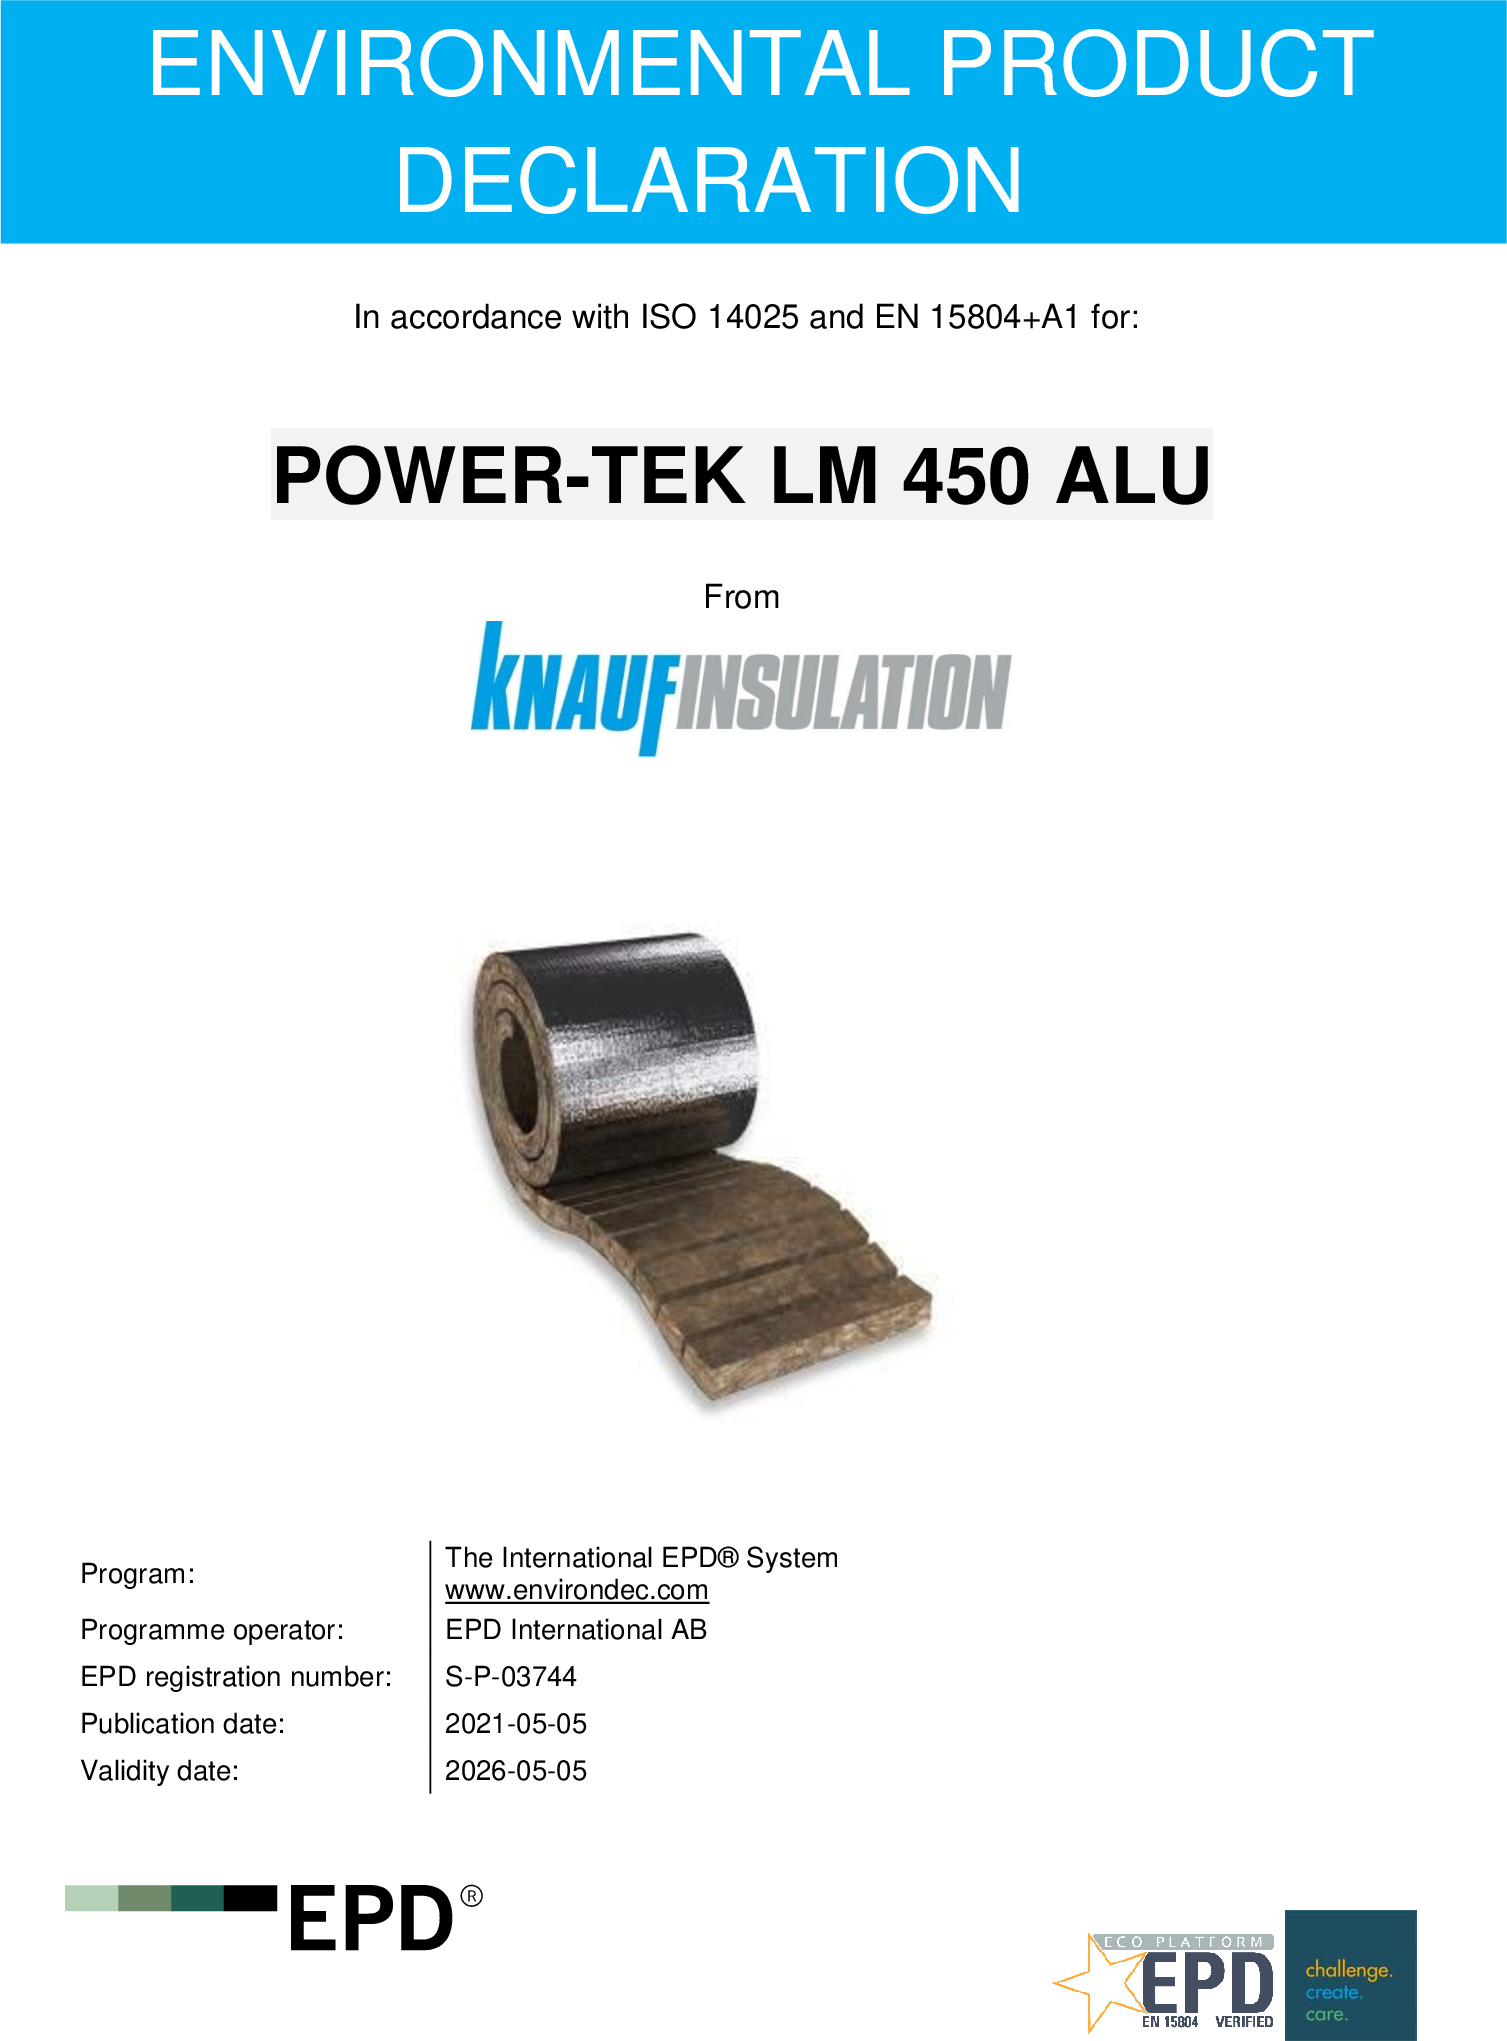 POWER-TEK LM 450 ALU